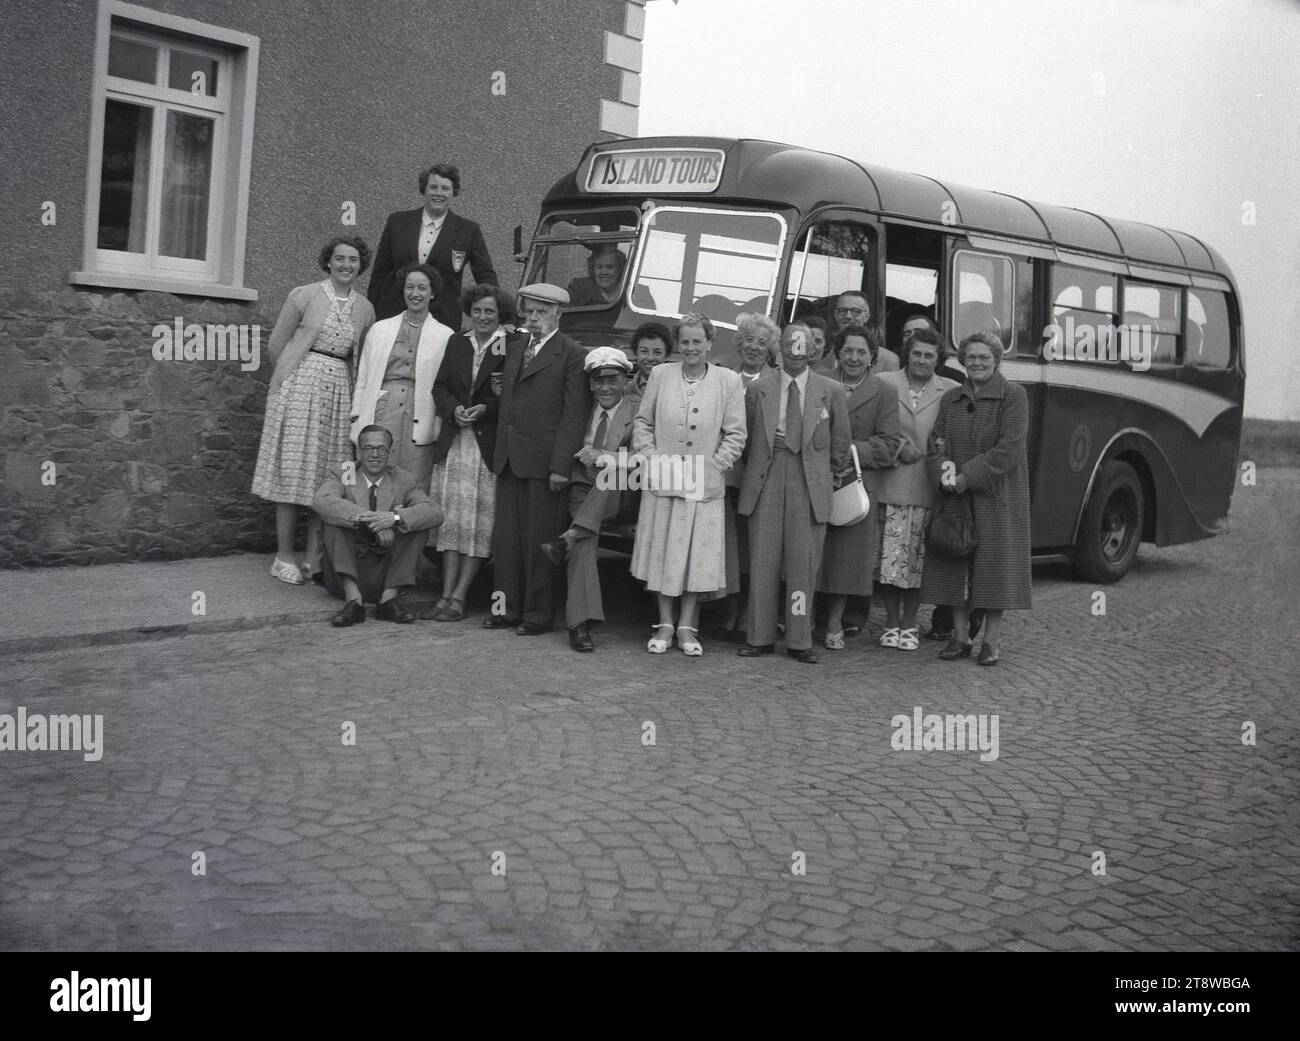 1950er Jahre, historisch, eine Gruppe von Erwachsenen auf einem Ausflug auf Guernsey, Kanalinseln mit ihrem Bus Transport, einem Albion Victor, betrieben von Guernsey Motors. In den formellen Kleidern der Epoche, Männer in Anzügen und Krawatten, Damen in langen Kleidern, versammeln sie sich um den Busfahrer mit seinem Hut, um ein Foto zu machen. Guernsey ist die zweitgrößte der Inseln im englischen Kanal nahe der französischen Küste. Stockfoto